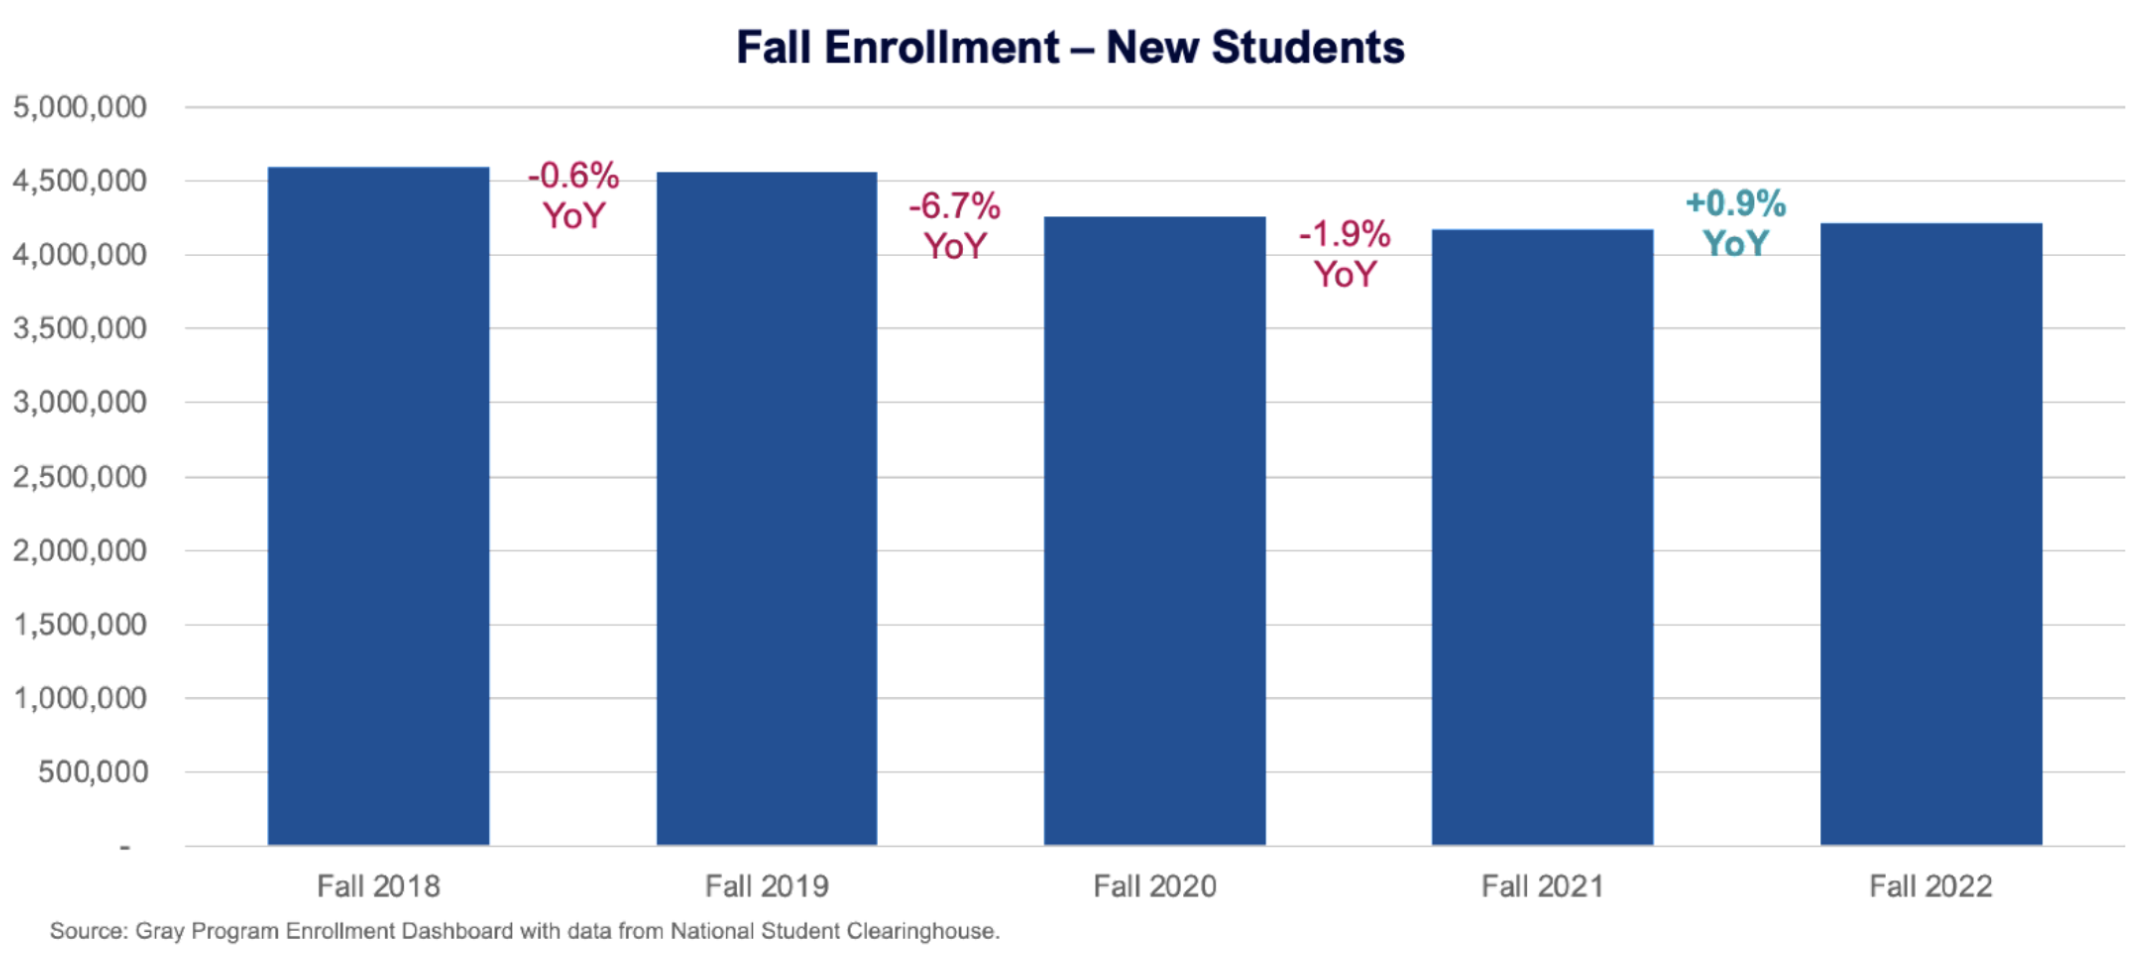 Fall Enrollment - New Students